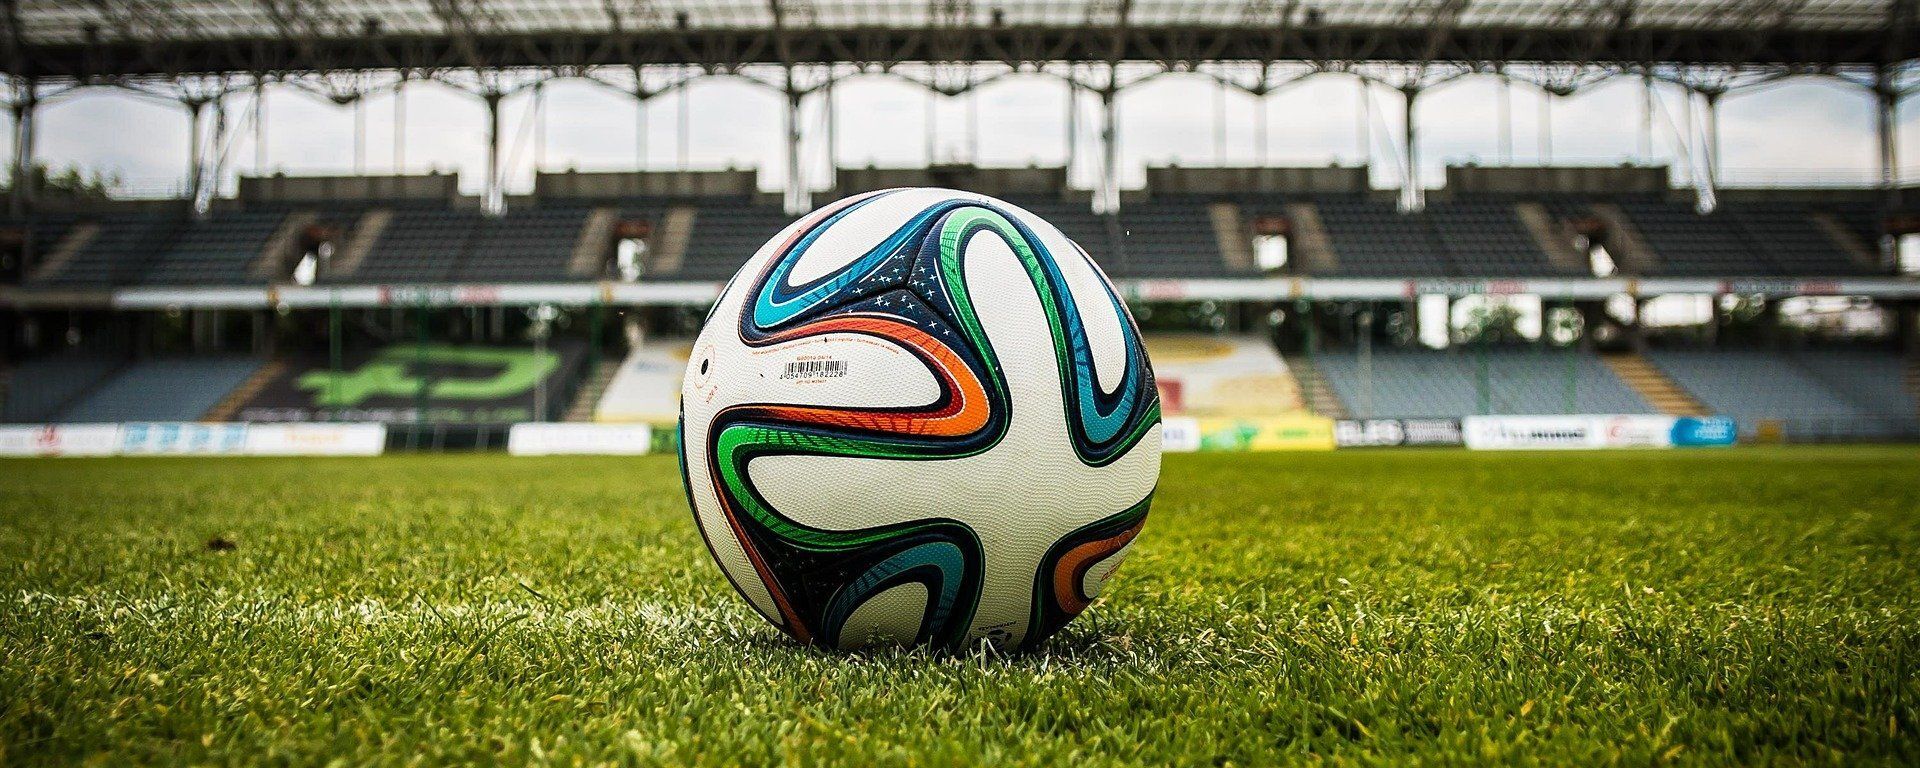 Balón de fútbol en un estadio (imagen referencial) - Sputnik Mundo, 1920, 31.03.2021